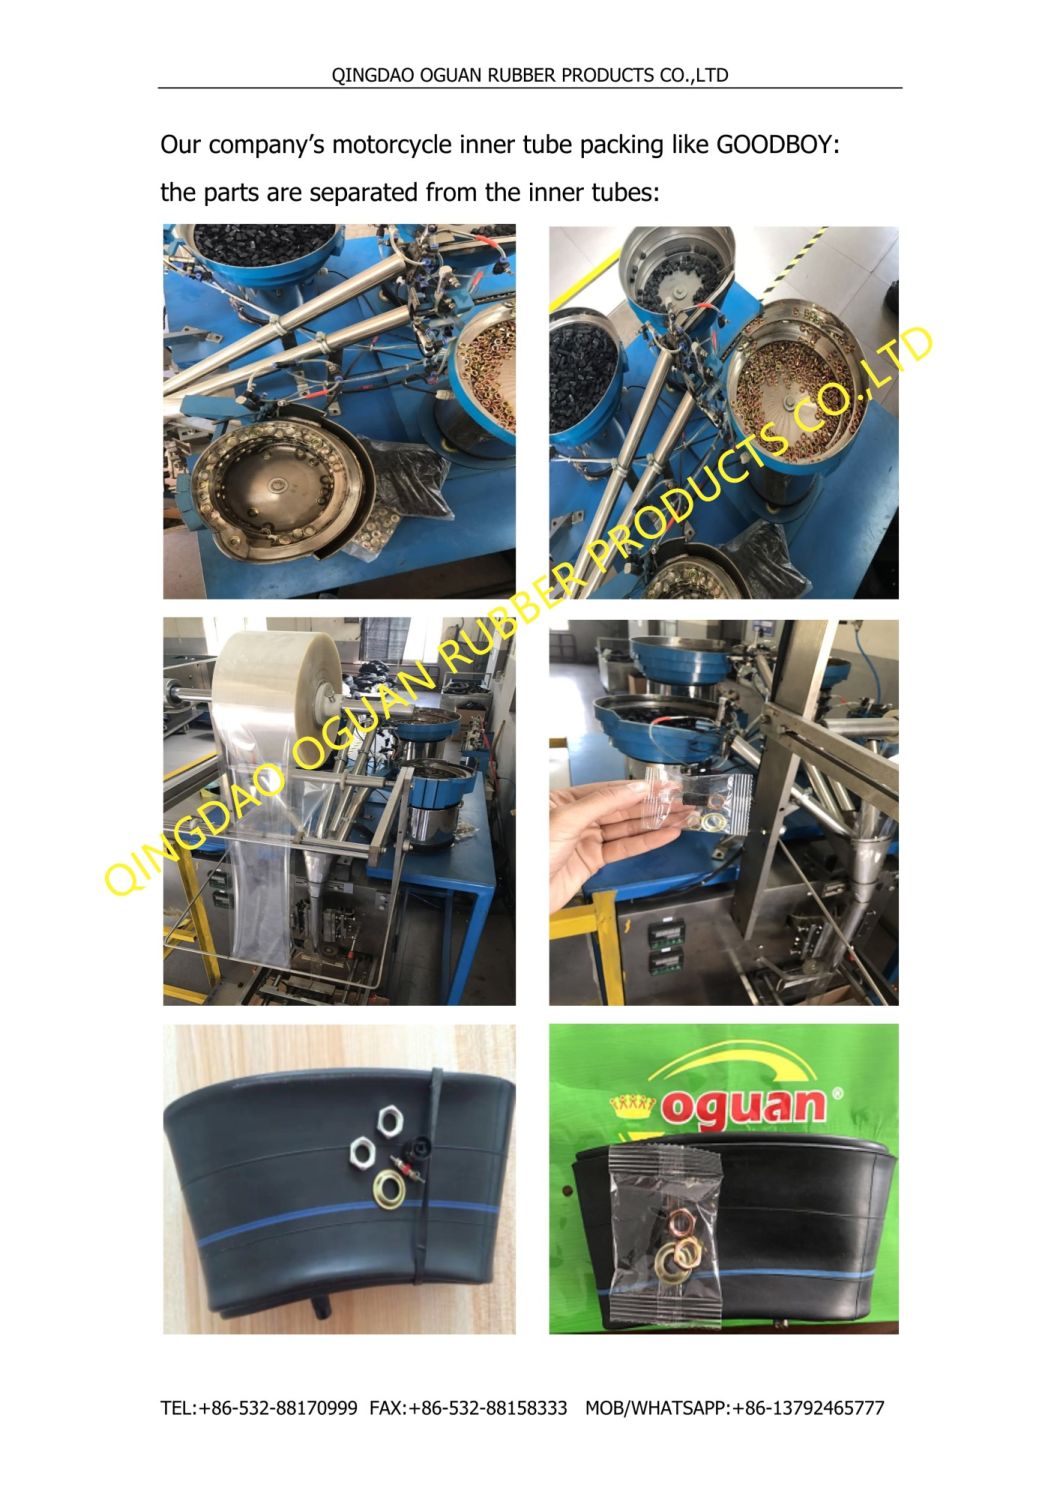 300/325-18 Butyl Rubber of Motorcycle Tube